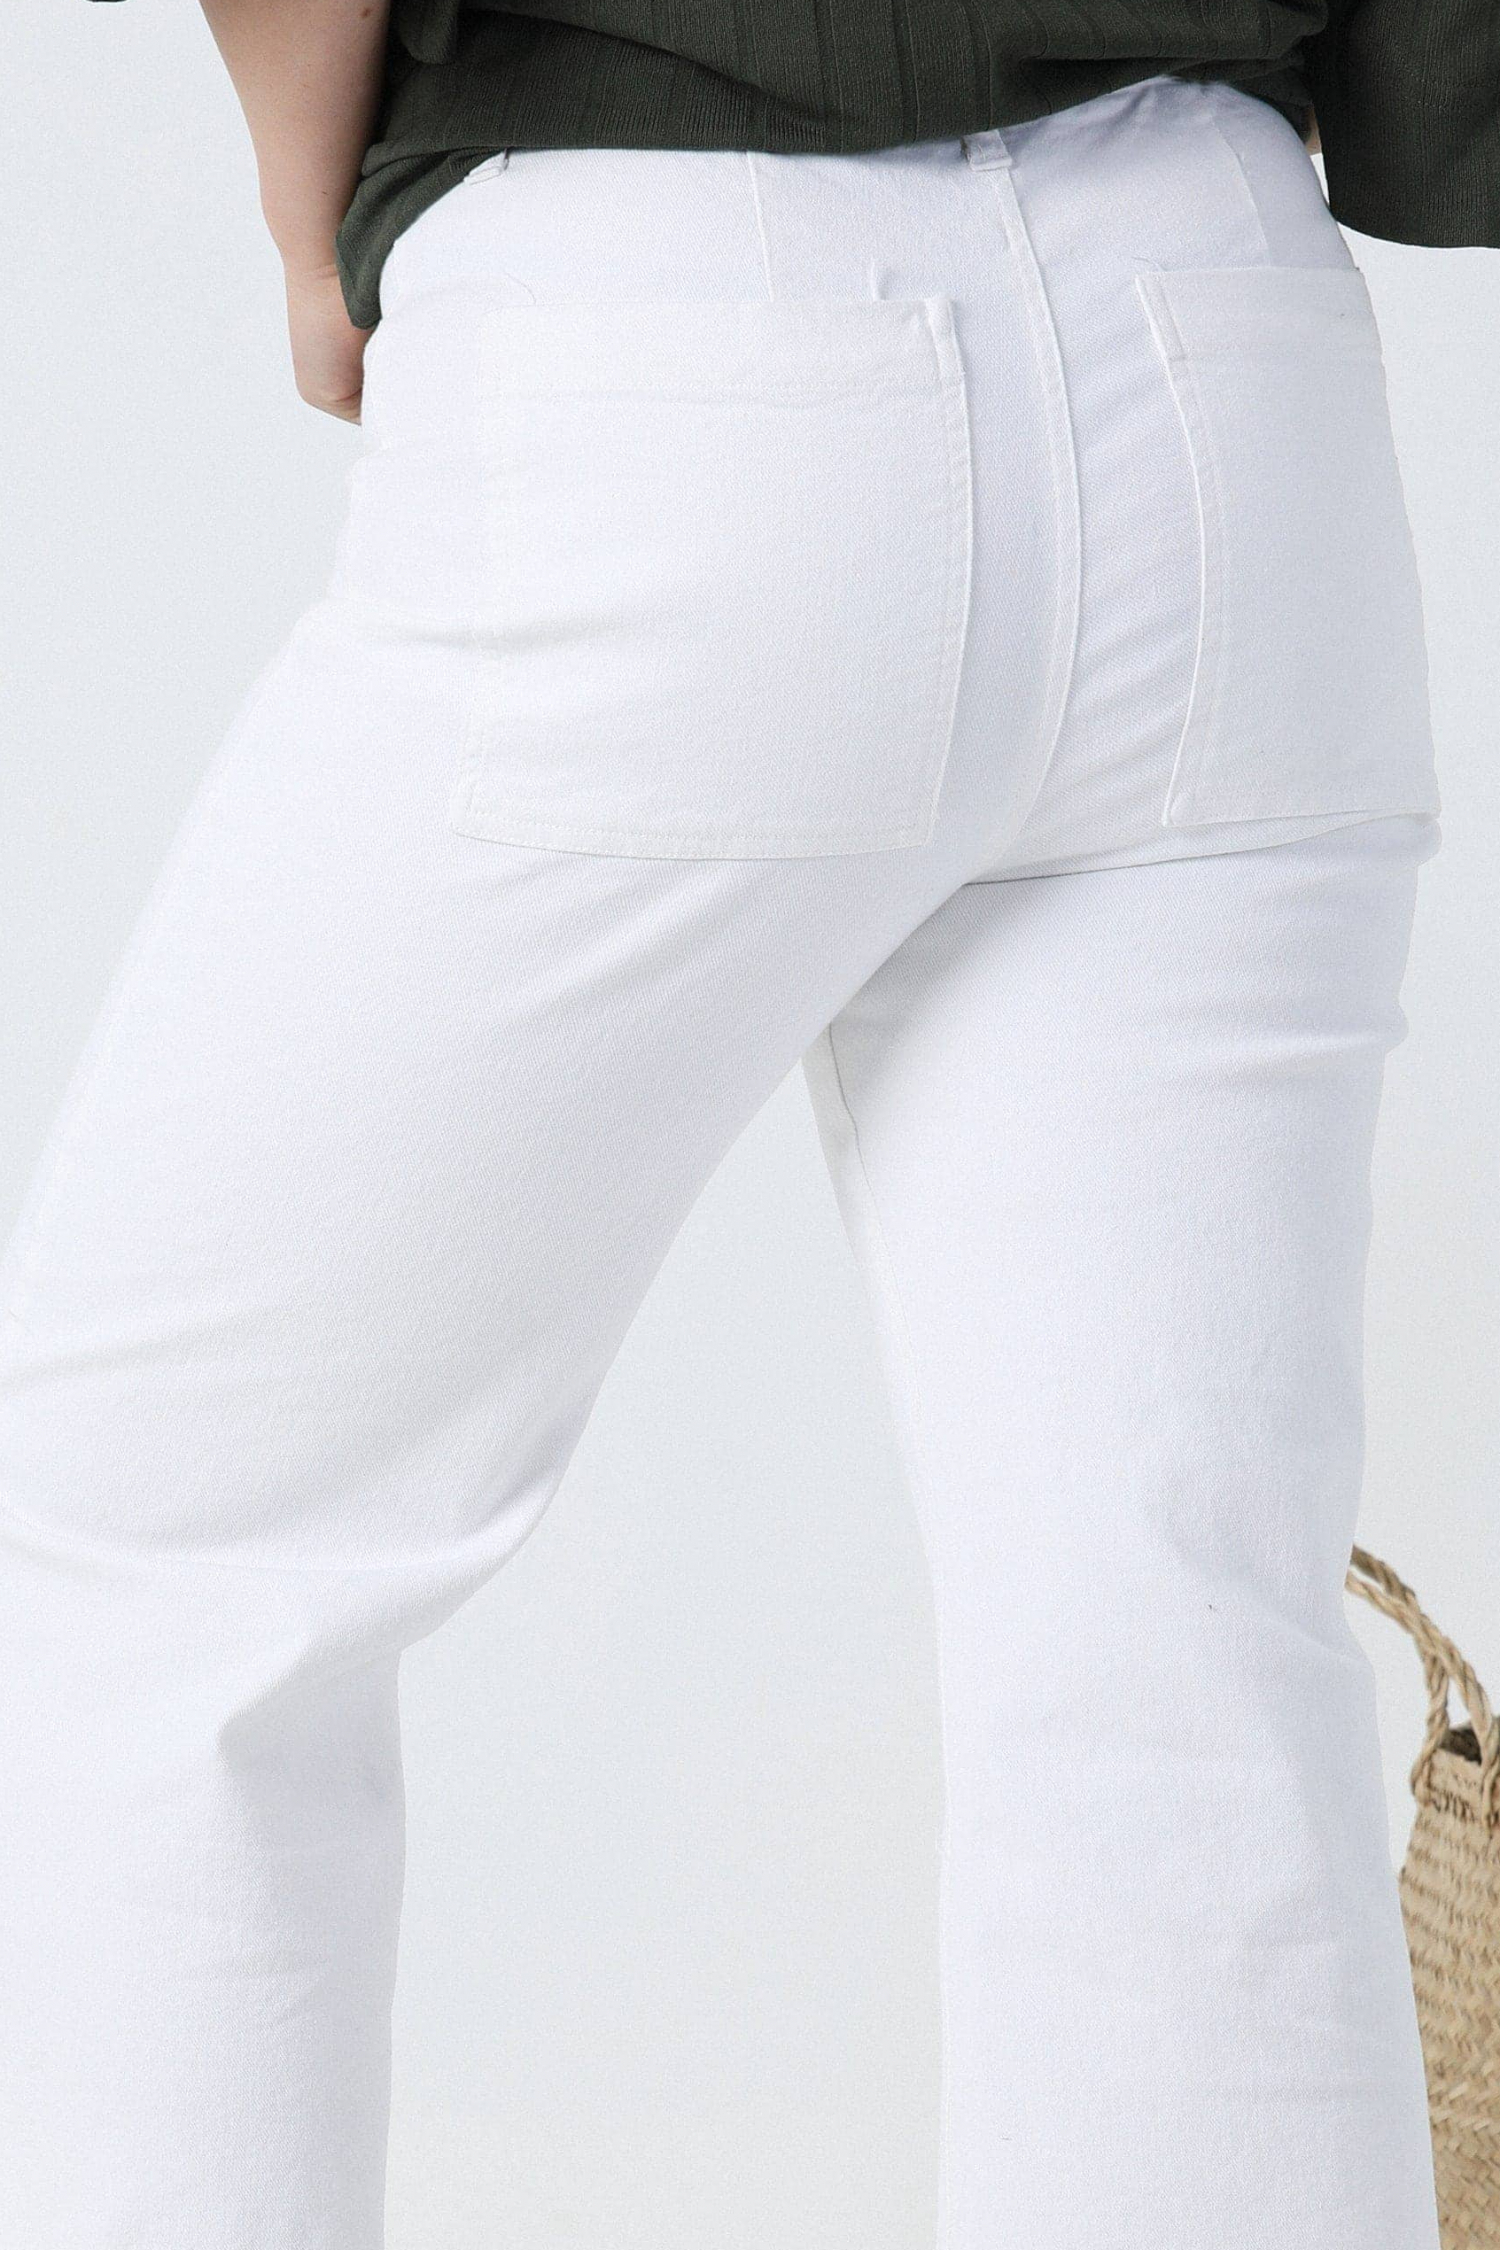 White jeans pants